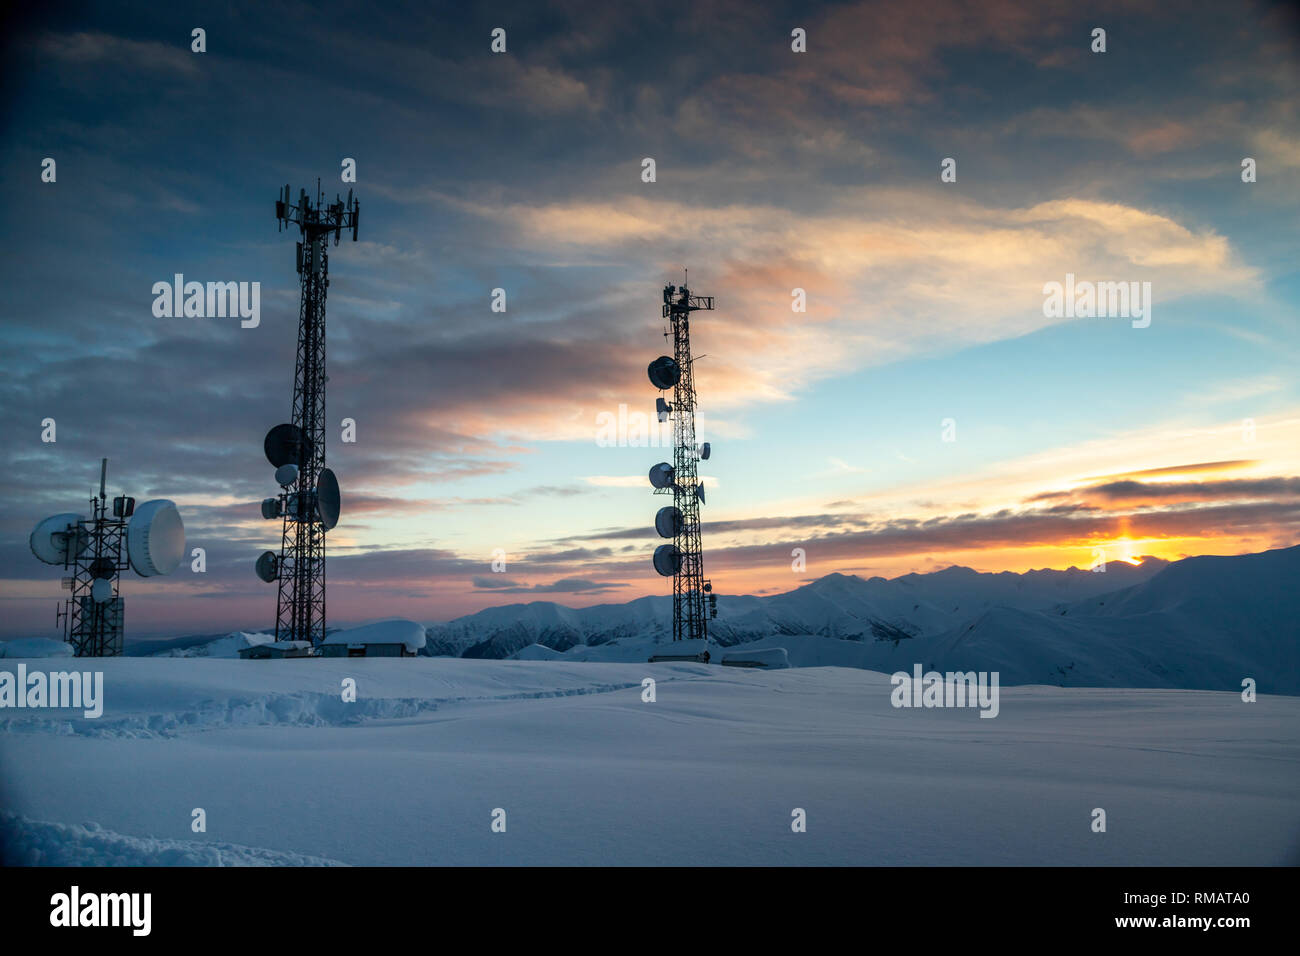 Kommunikation Turm mit Antennen und Satellitenschüsseln im Hintergrund einer winterlichen Bergwelt, bei Sonnenuntergang. Gudauri, Georgien Stockfoto